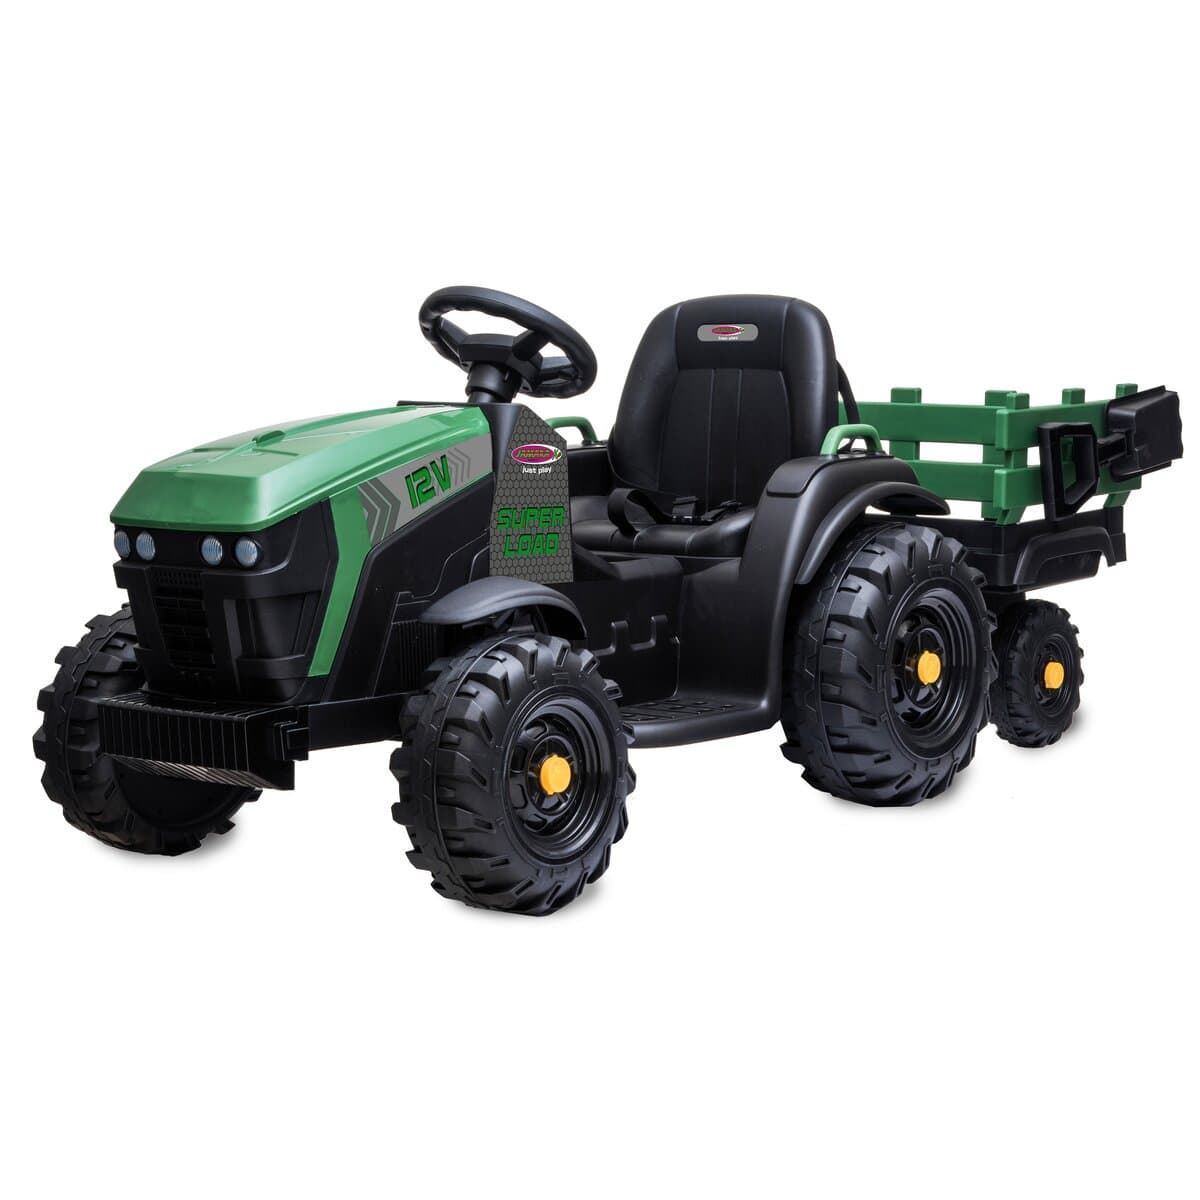 Tractor de batería 12v con remolque verde jamara 460896 - Imagen 1